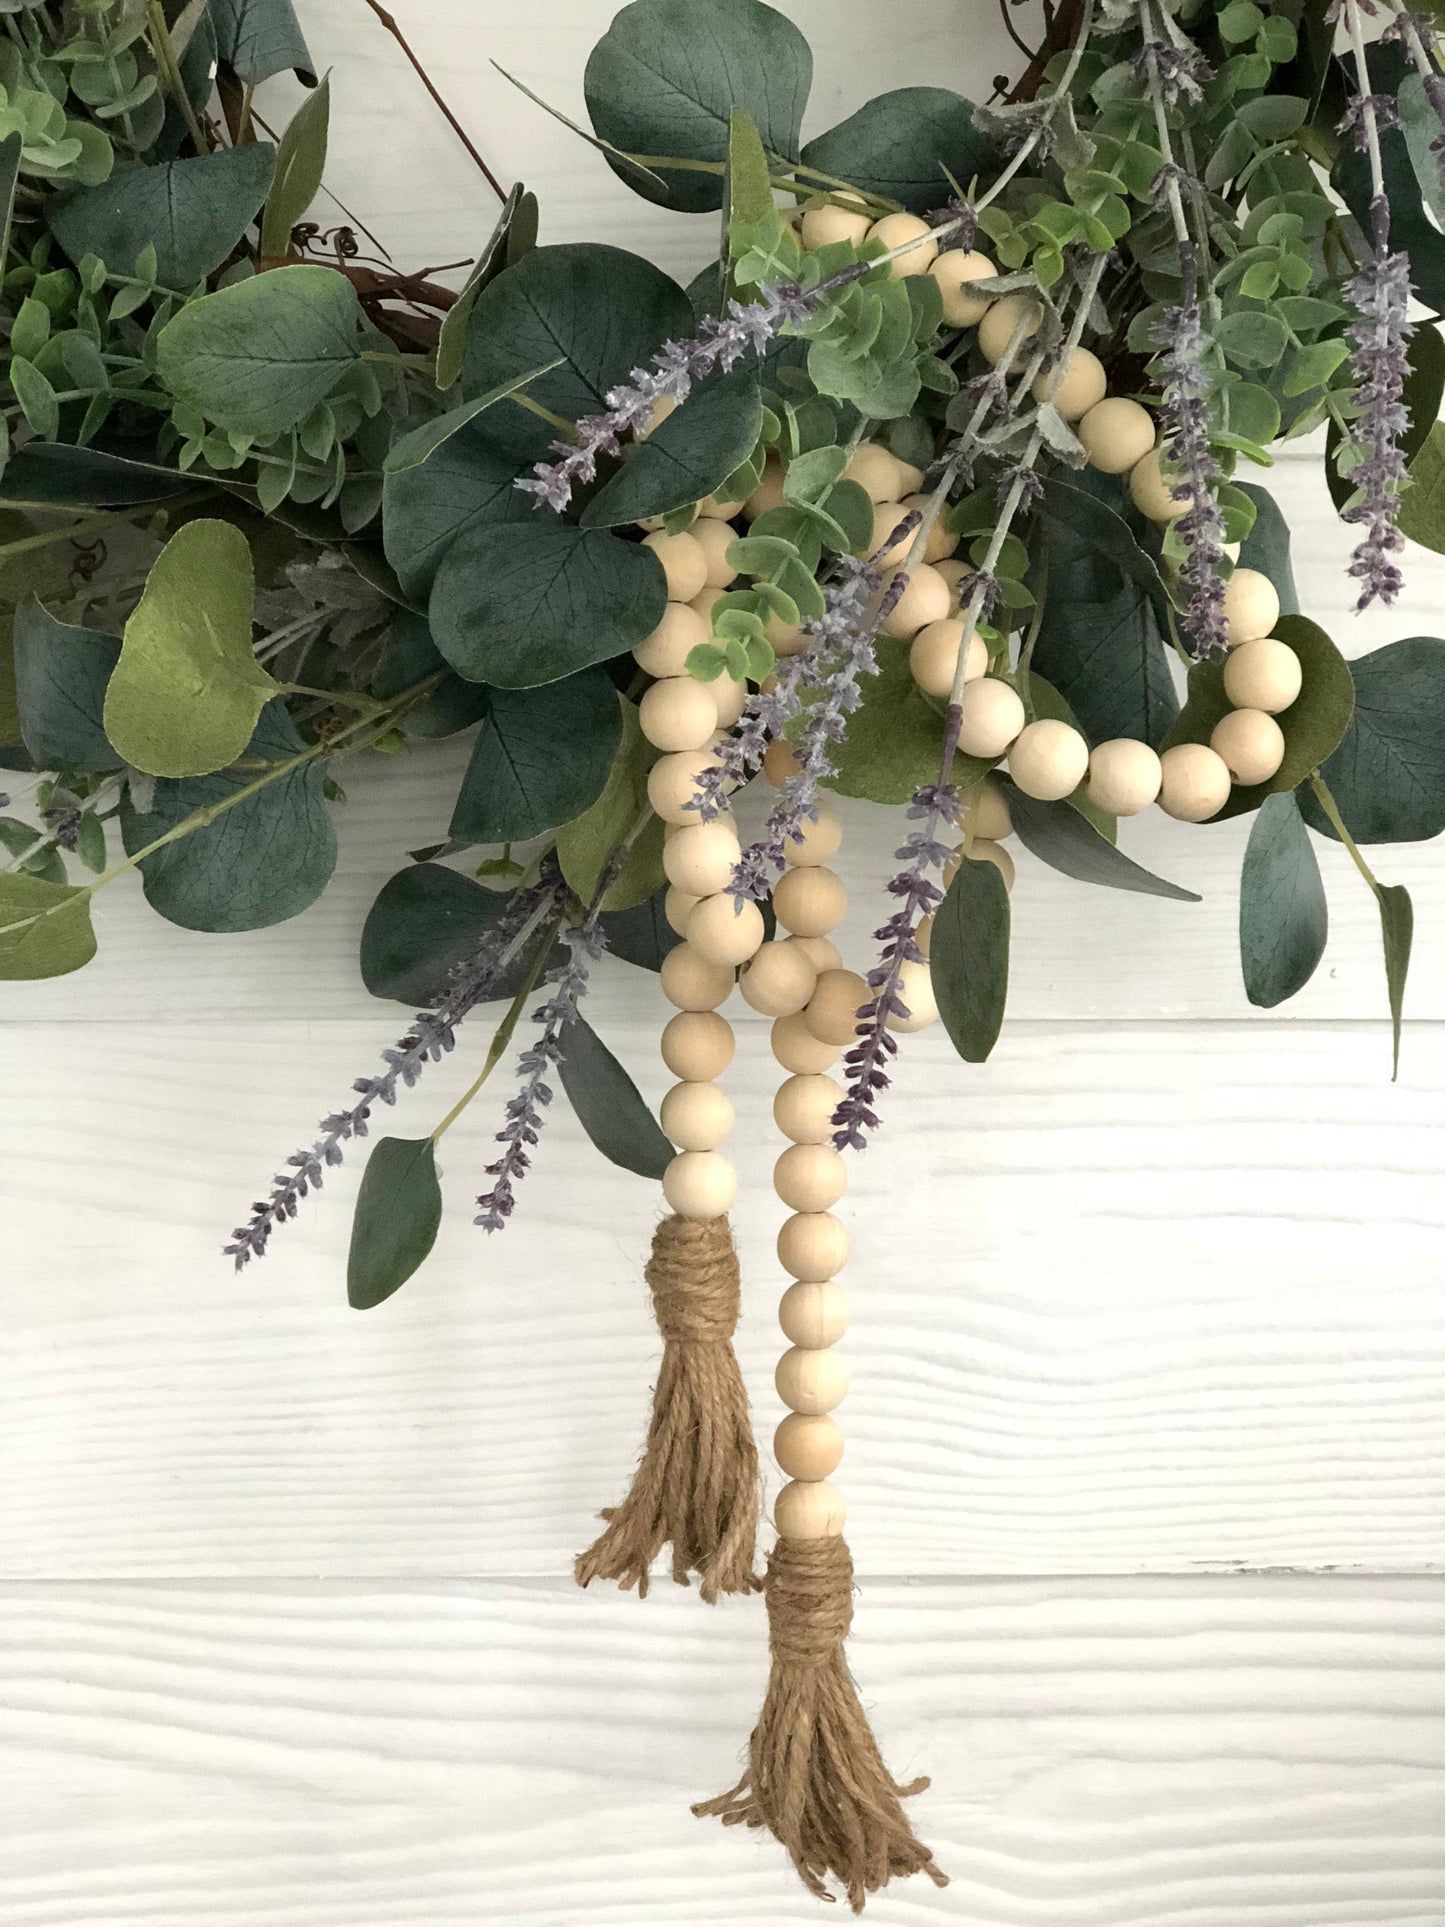 Lavender and Eucalyptus Wreath, Front Door Decor, Spring Wreath, Spring Porch Decor, Wreaths For Spring